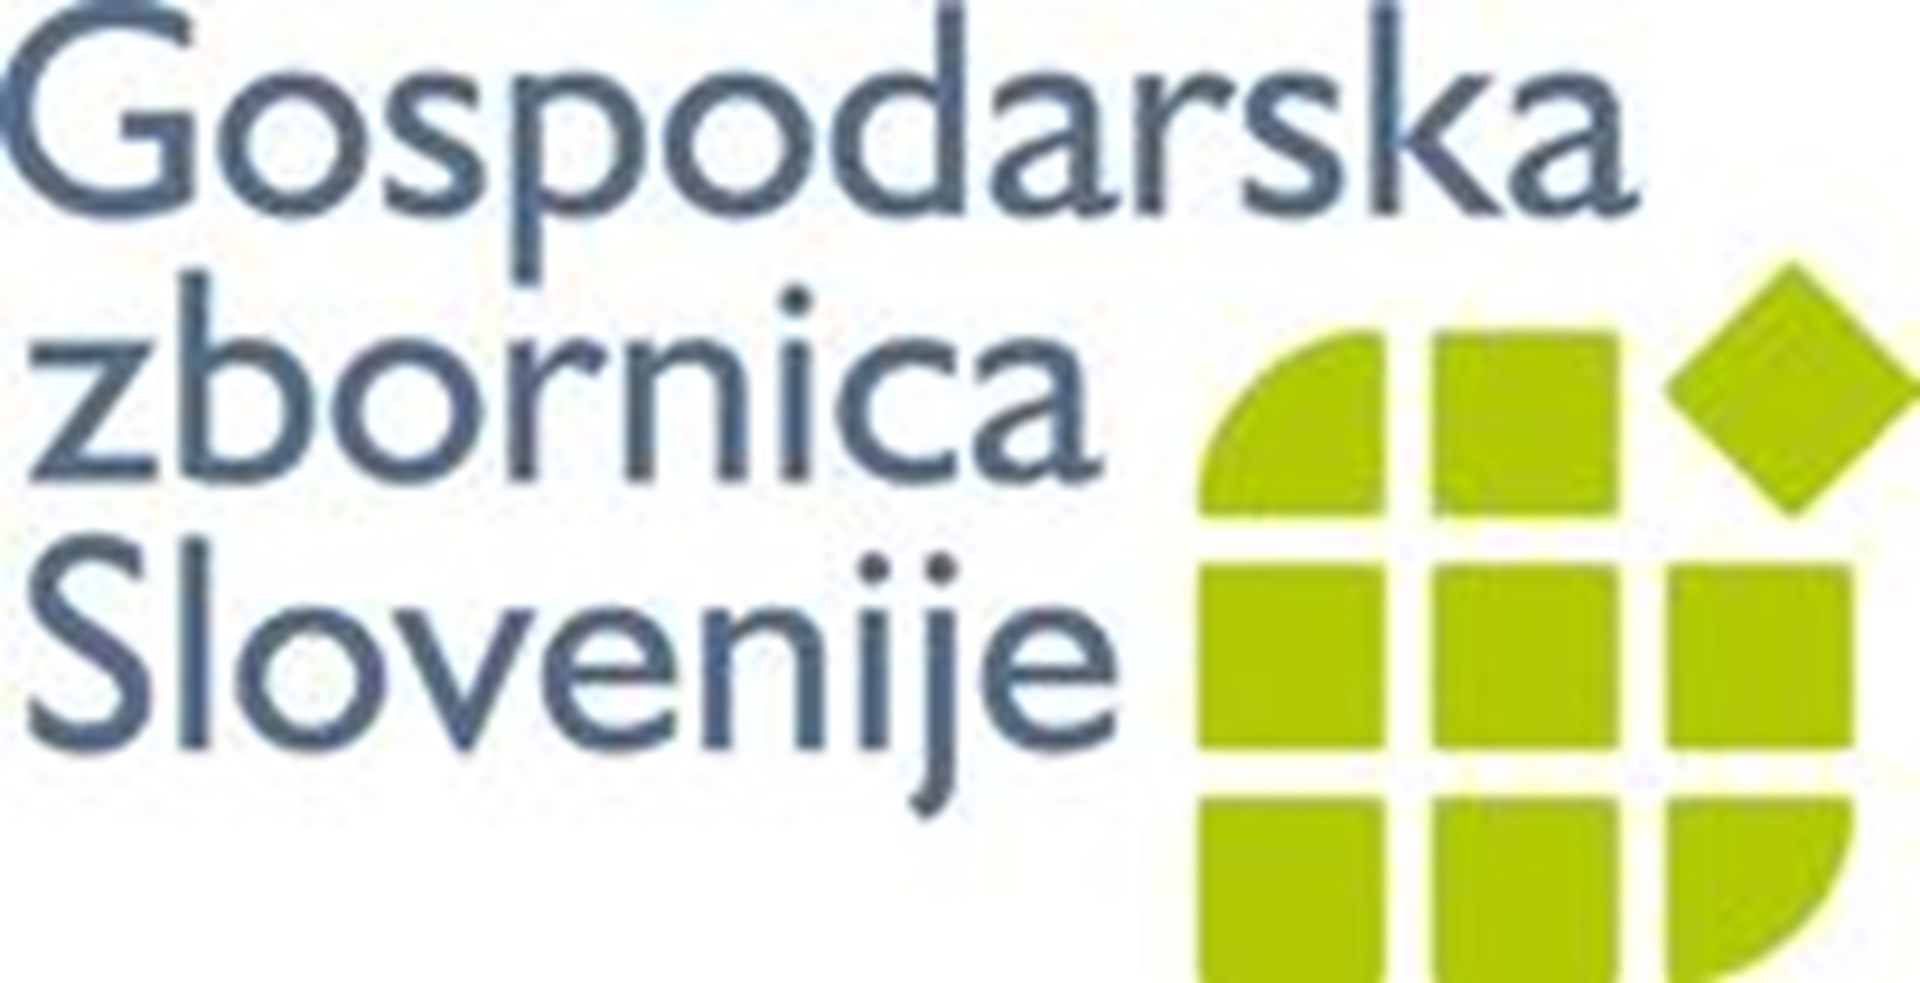 Gospodarska zbornica Slovenije GZS